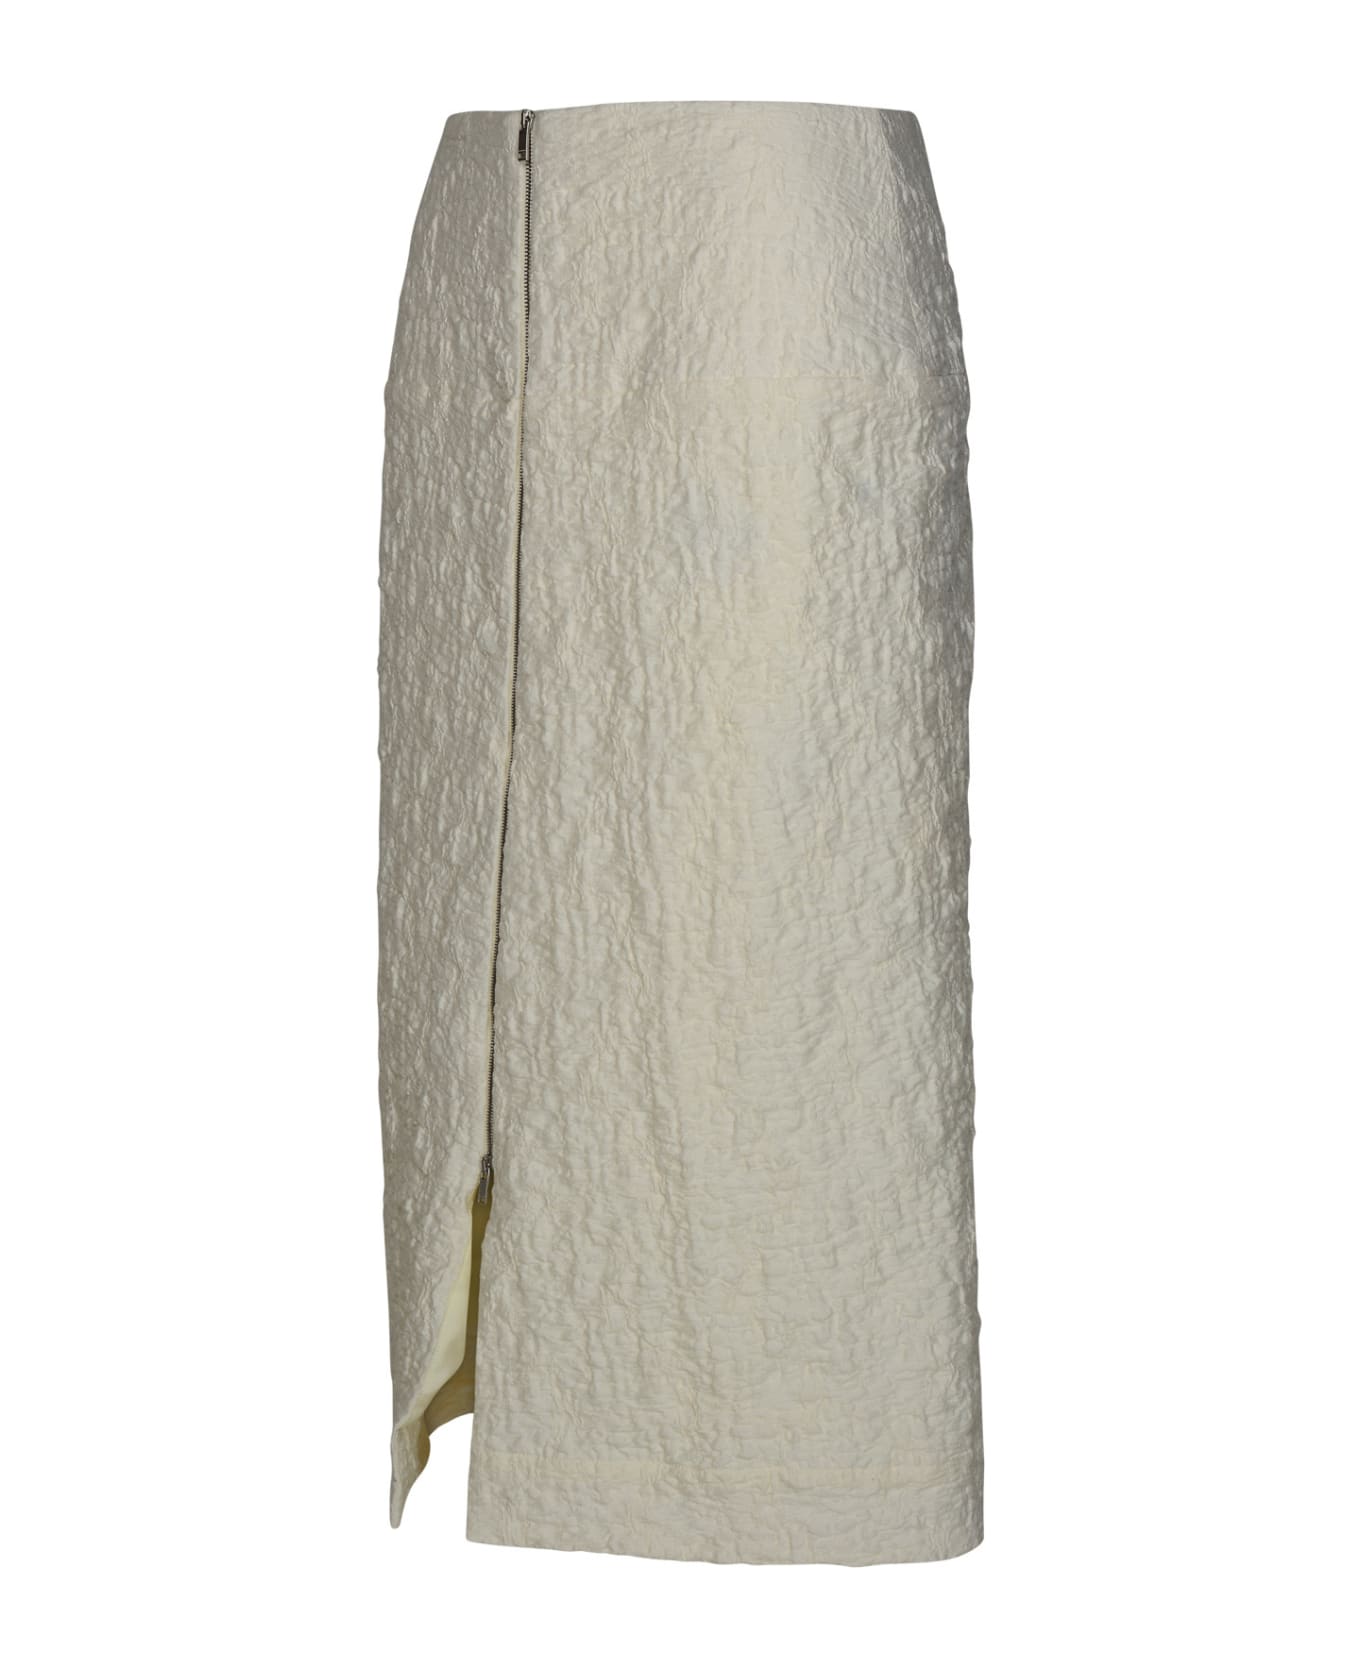 Jil Sander White Cotton Blend Skirt - White